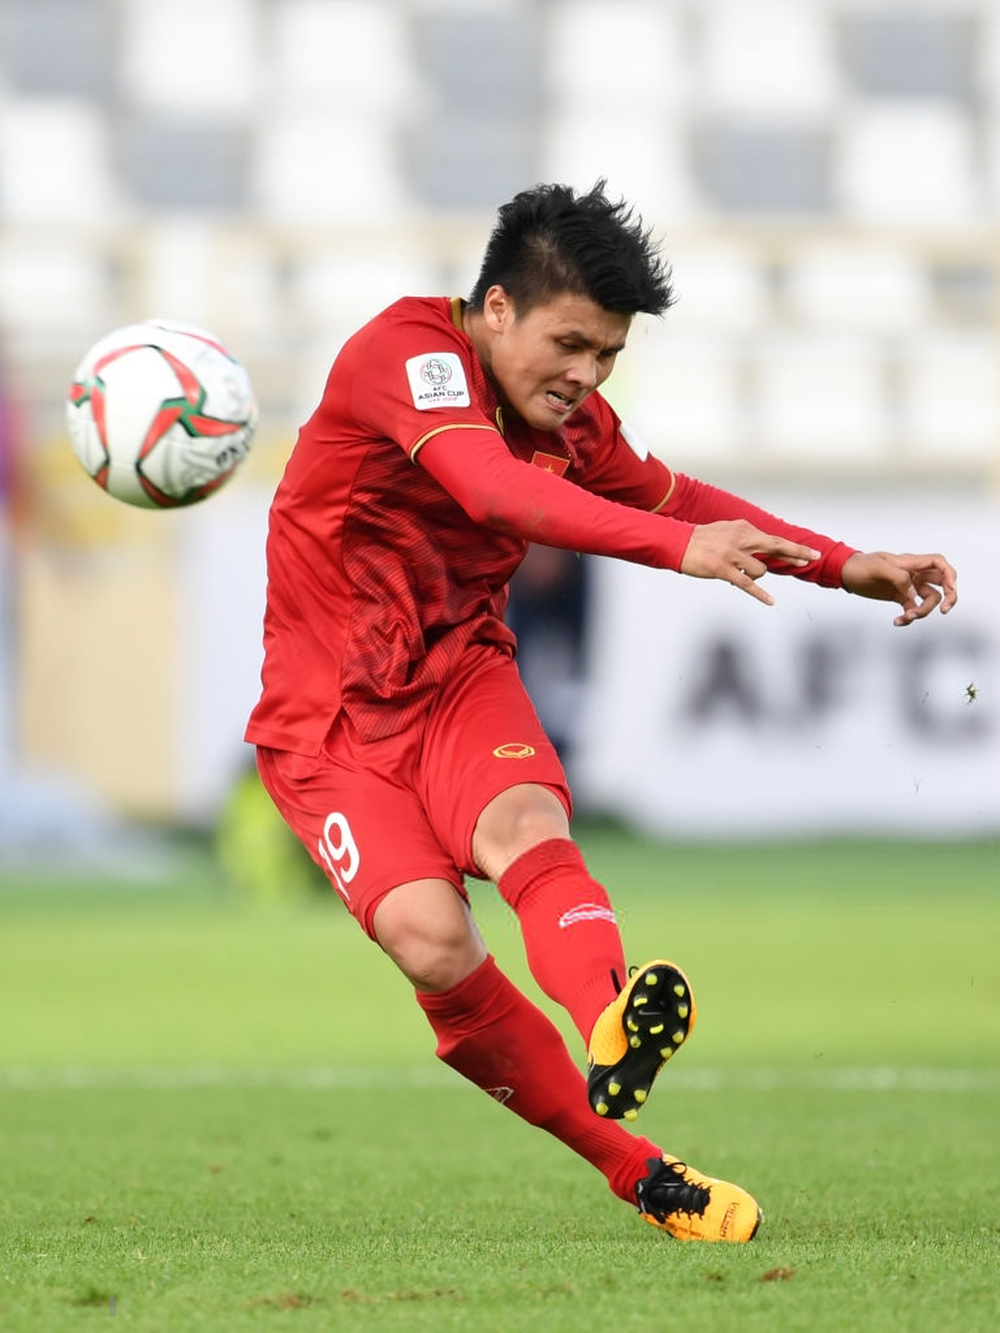 Siêu phẩm cầu vồng của Quang Hải lọt top 10 bàn đẹp nhất vòng bảng Asian Cup 2019 - Ảnh 2.